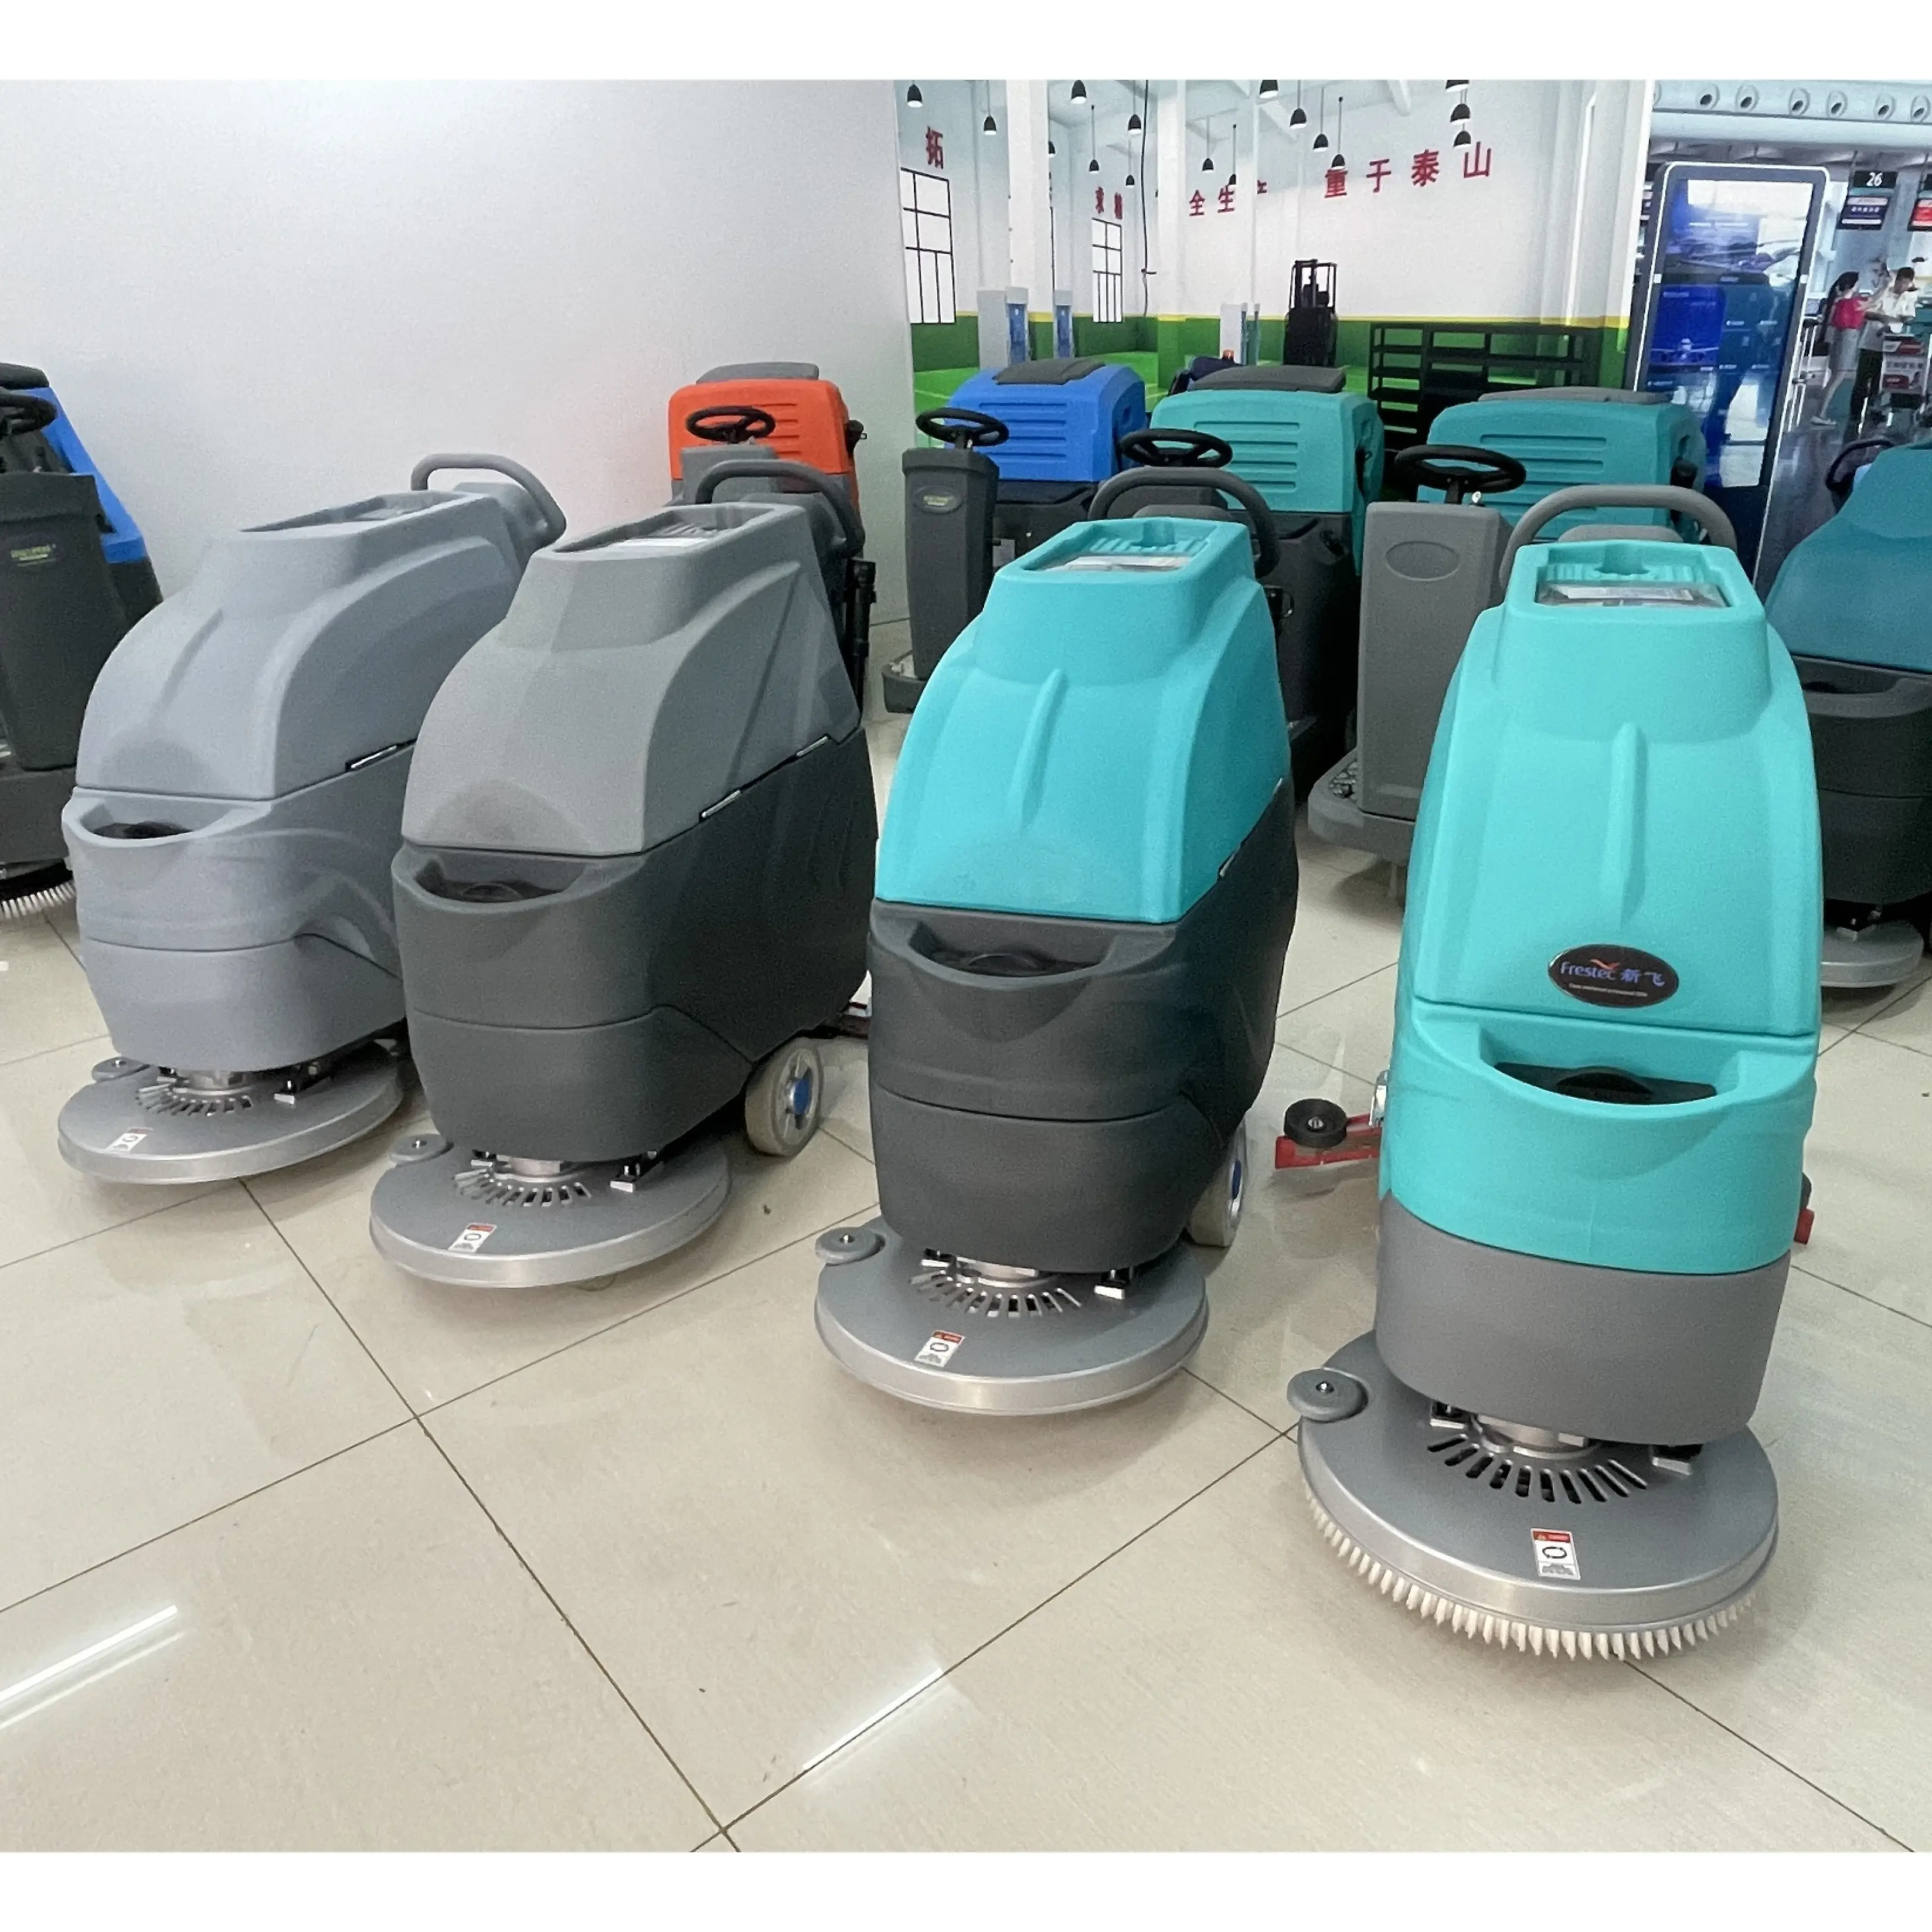 Gaoge equipamento de limpeza industrial a1, caminhada sem fio atrás dos purificadores de chão automático, robôs esfregantes para o centro de compras